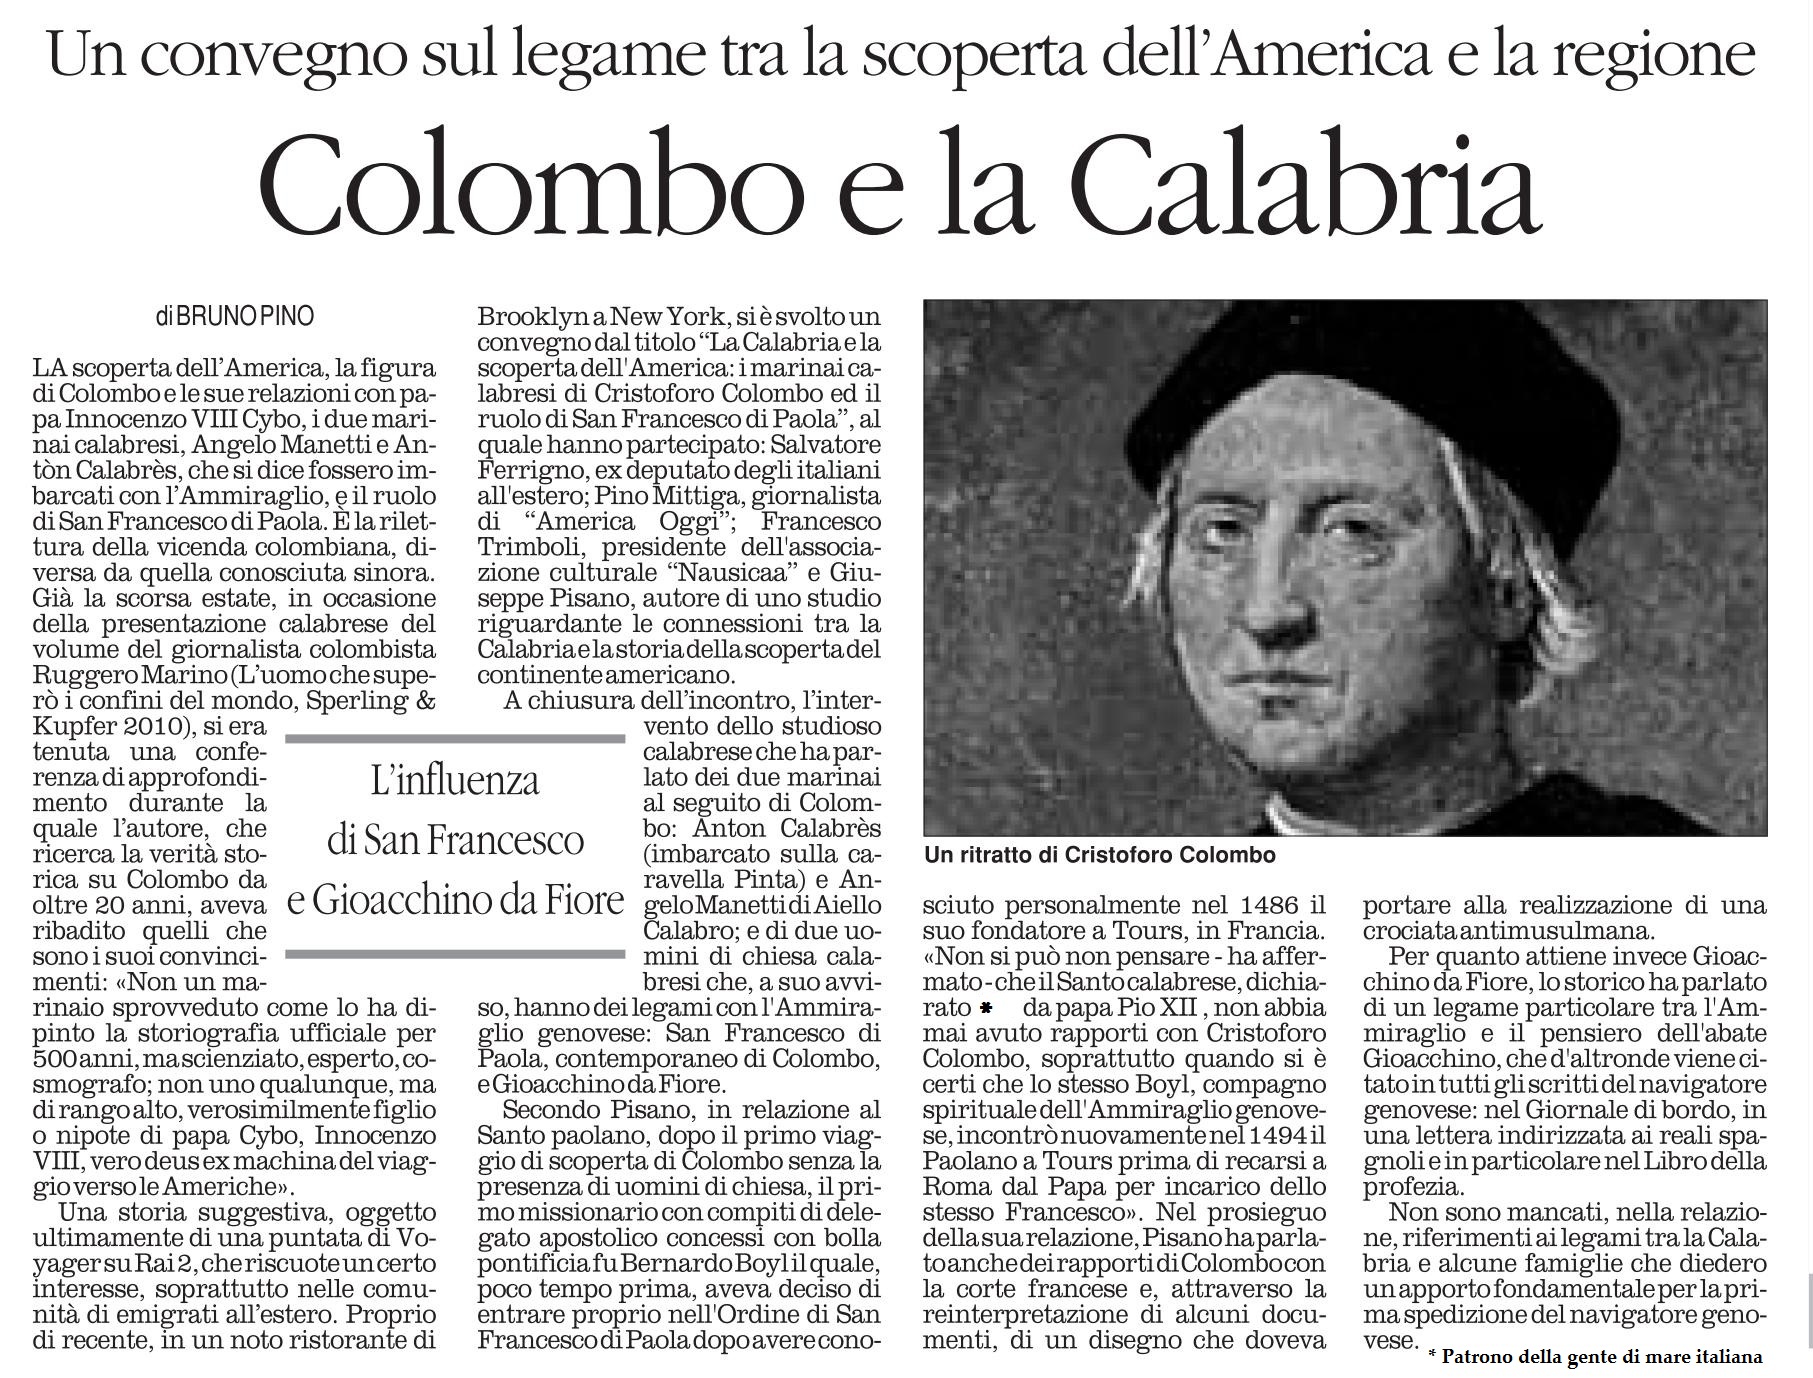 CONVEGNO IN AMERICA: COLOMBO E LA CALABRIA